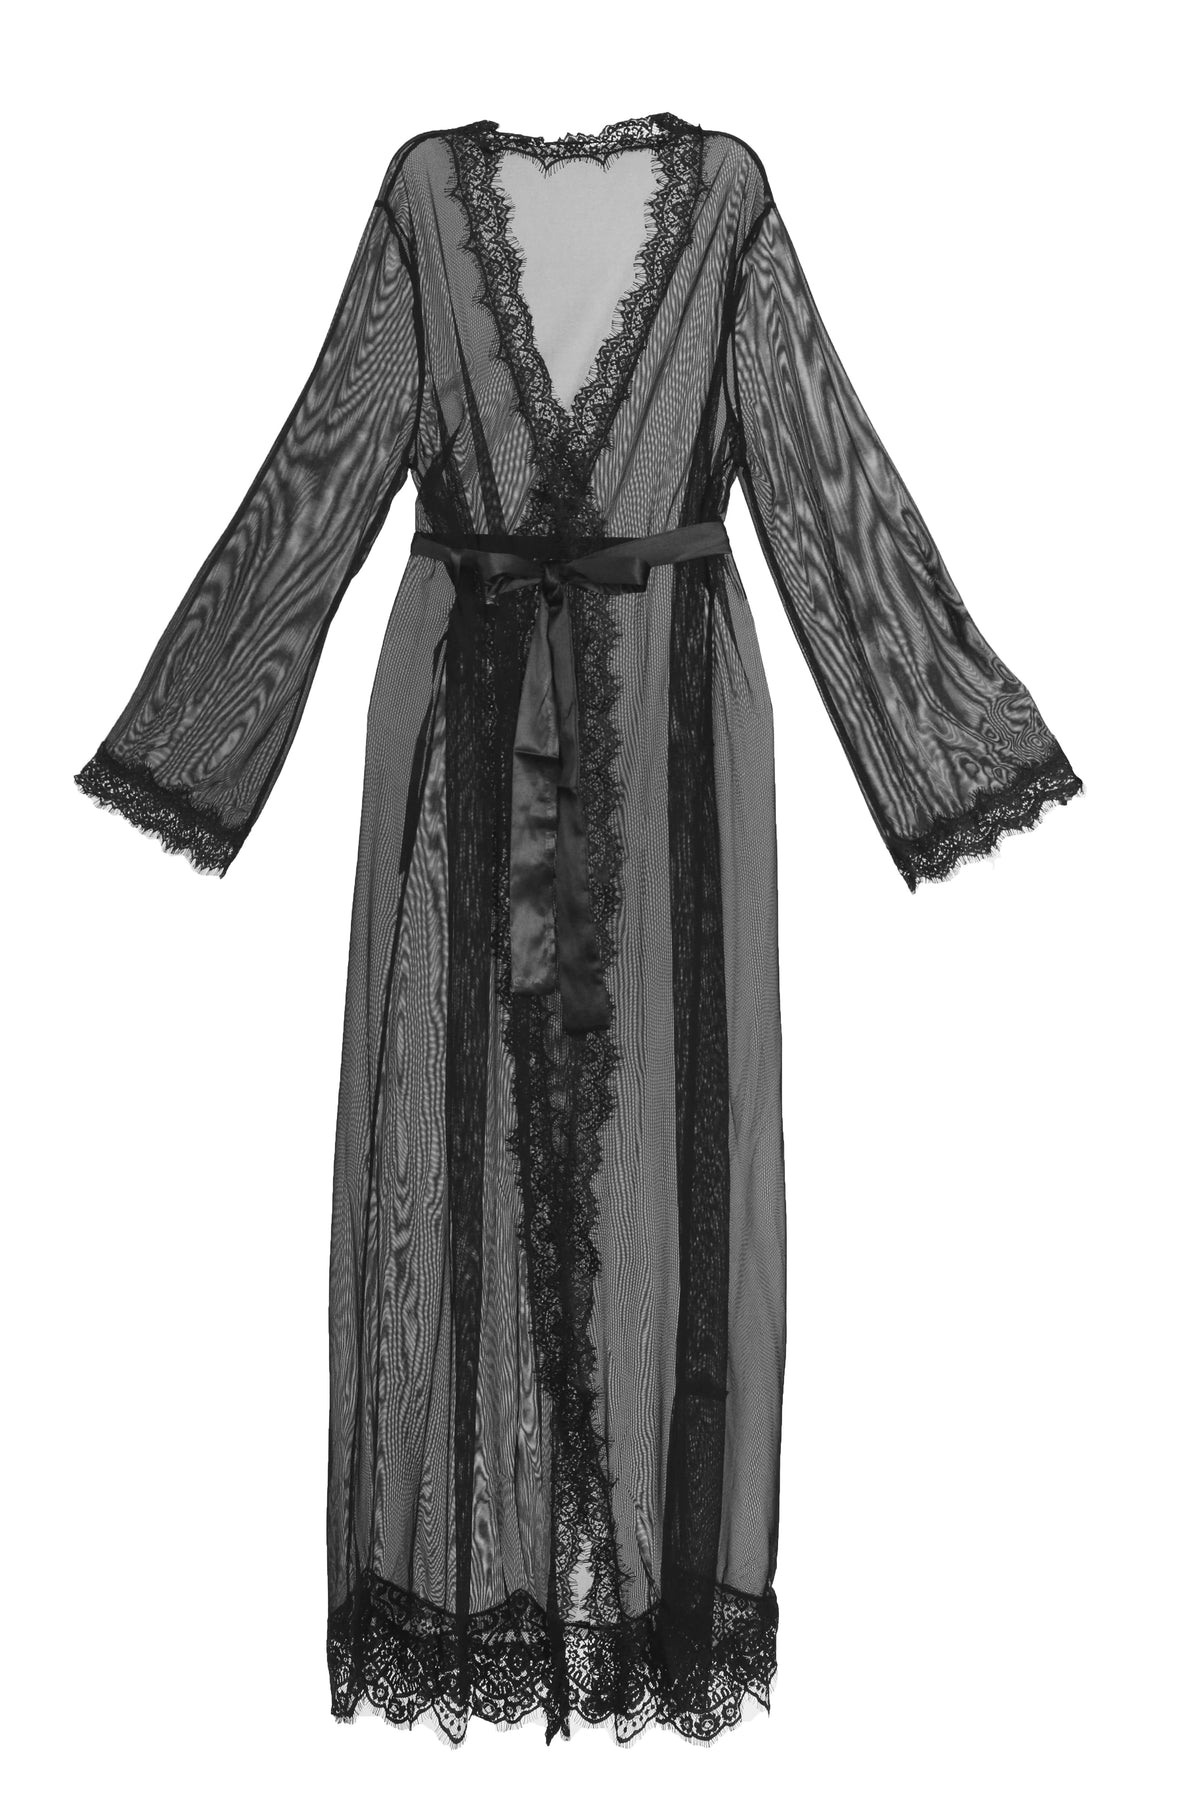 Oh La La Cheri Robe Black / S/M Provence Sheer Long Robe Set - Black